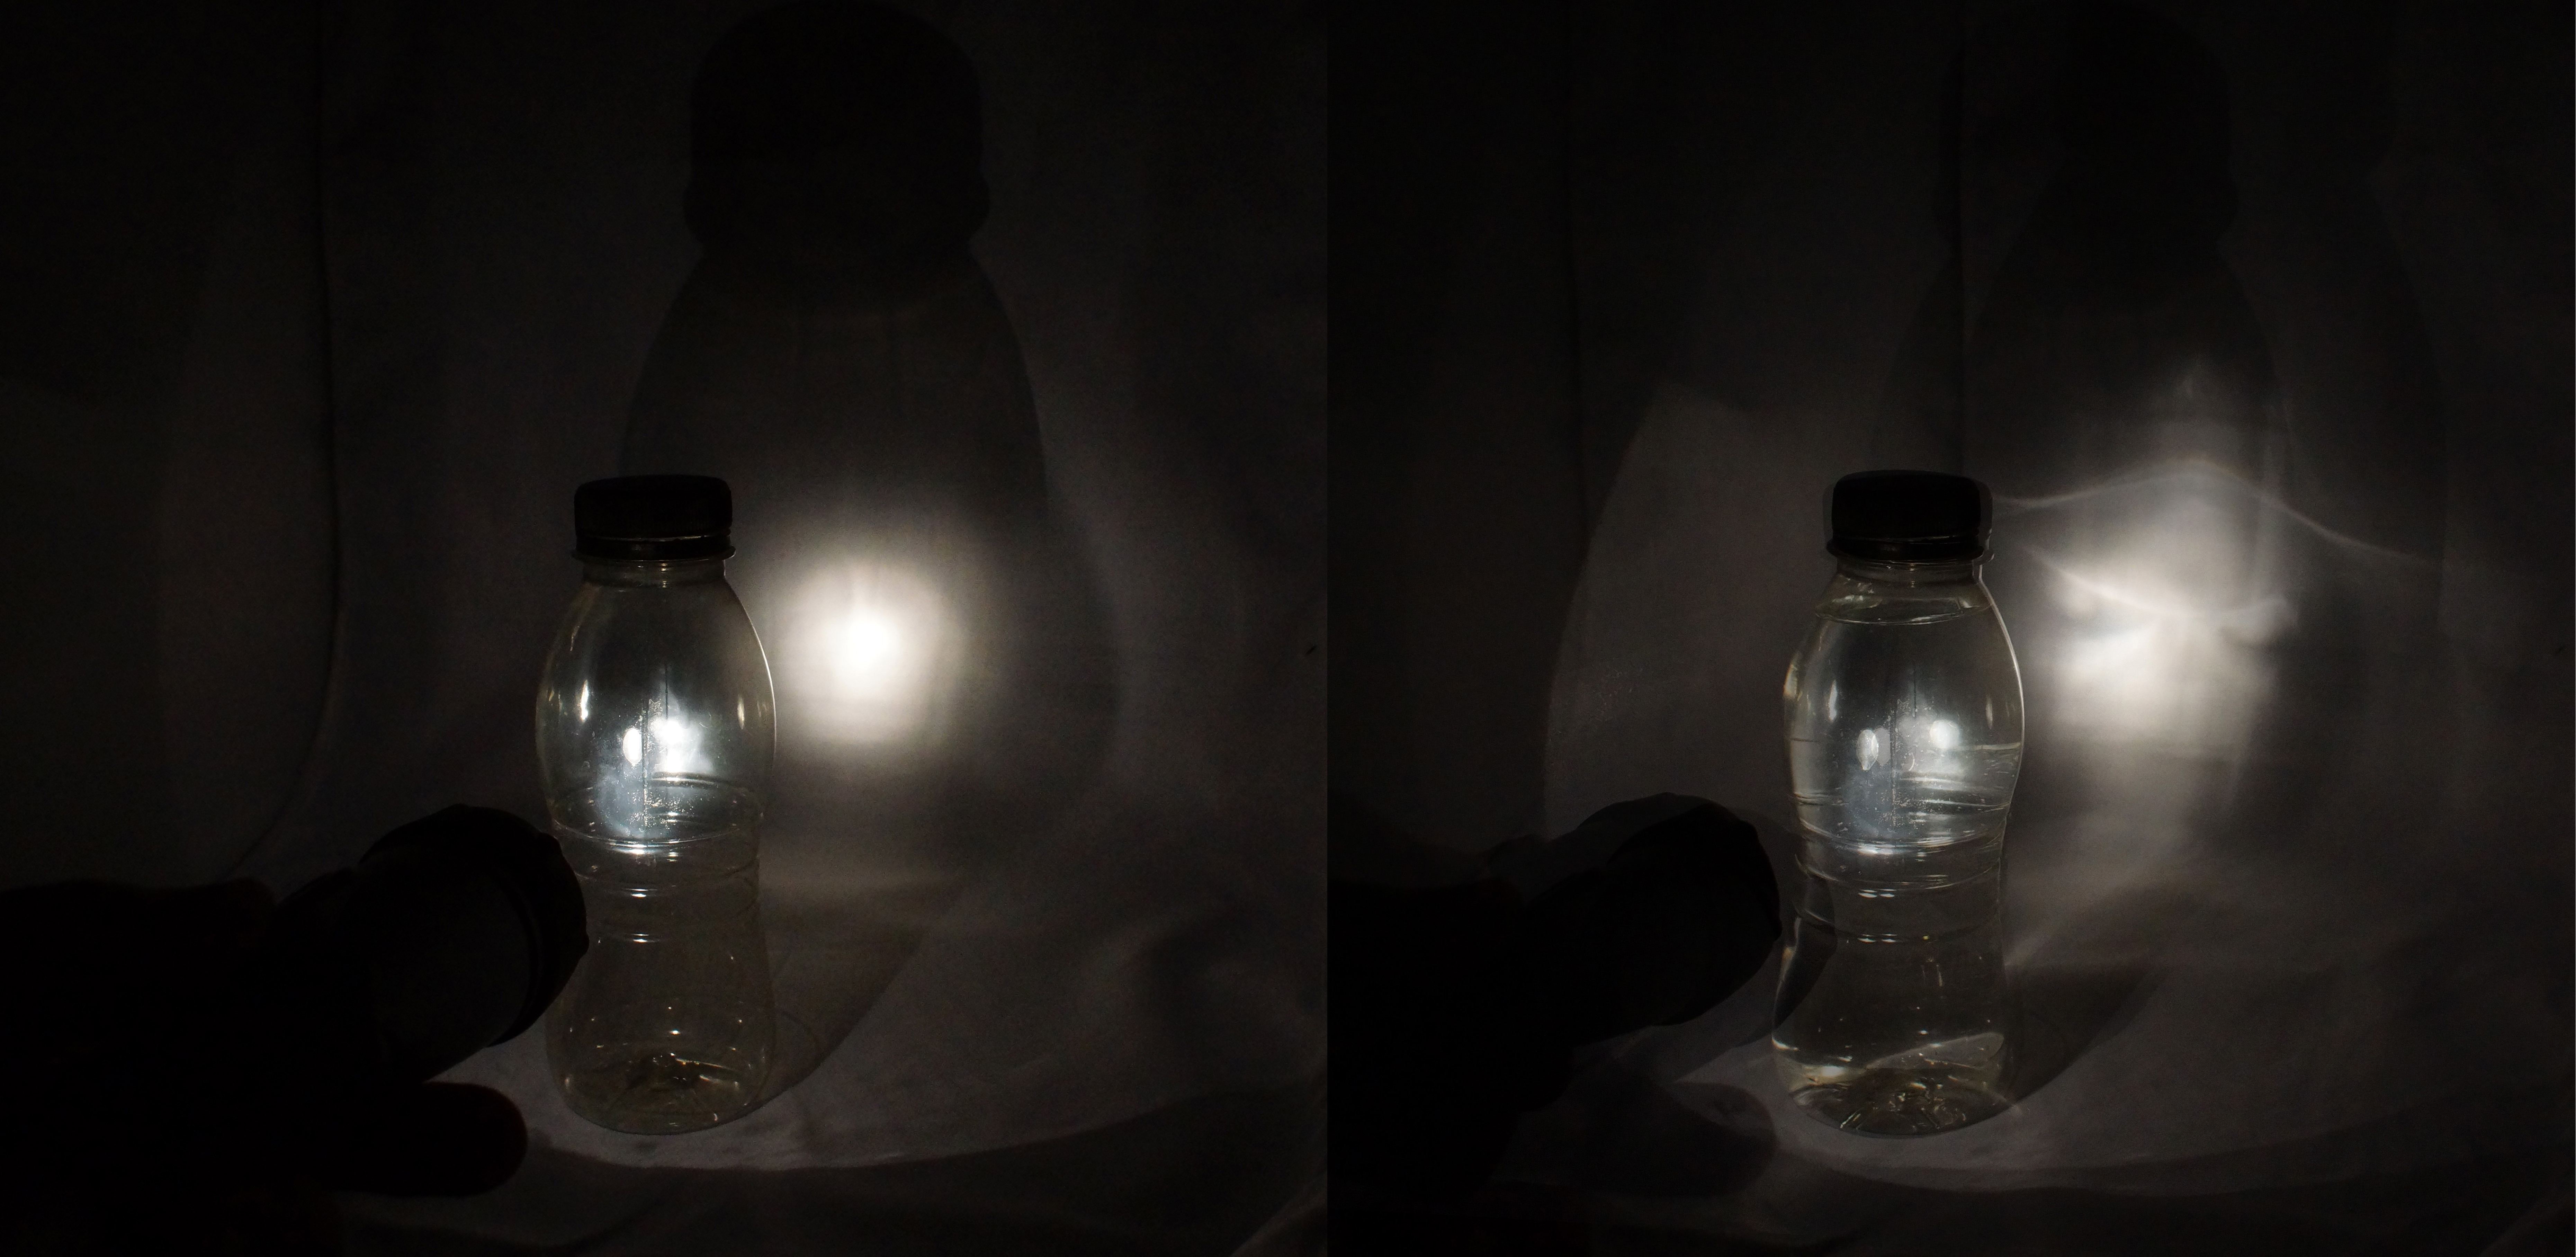 Vergleich Lichtfleck mit und ohne Wasser in der Flasche